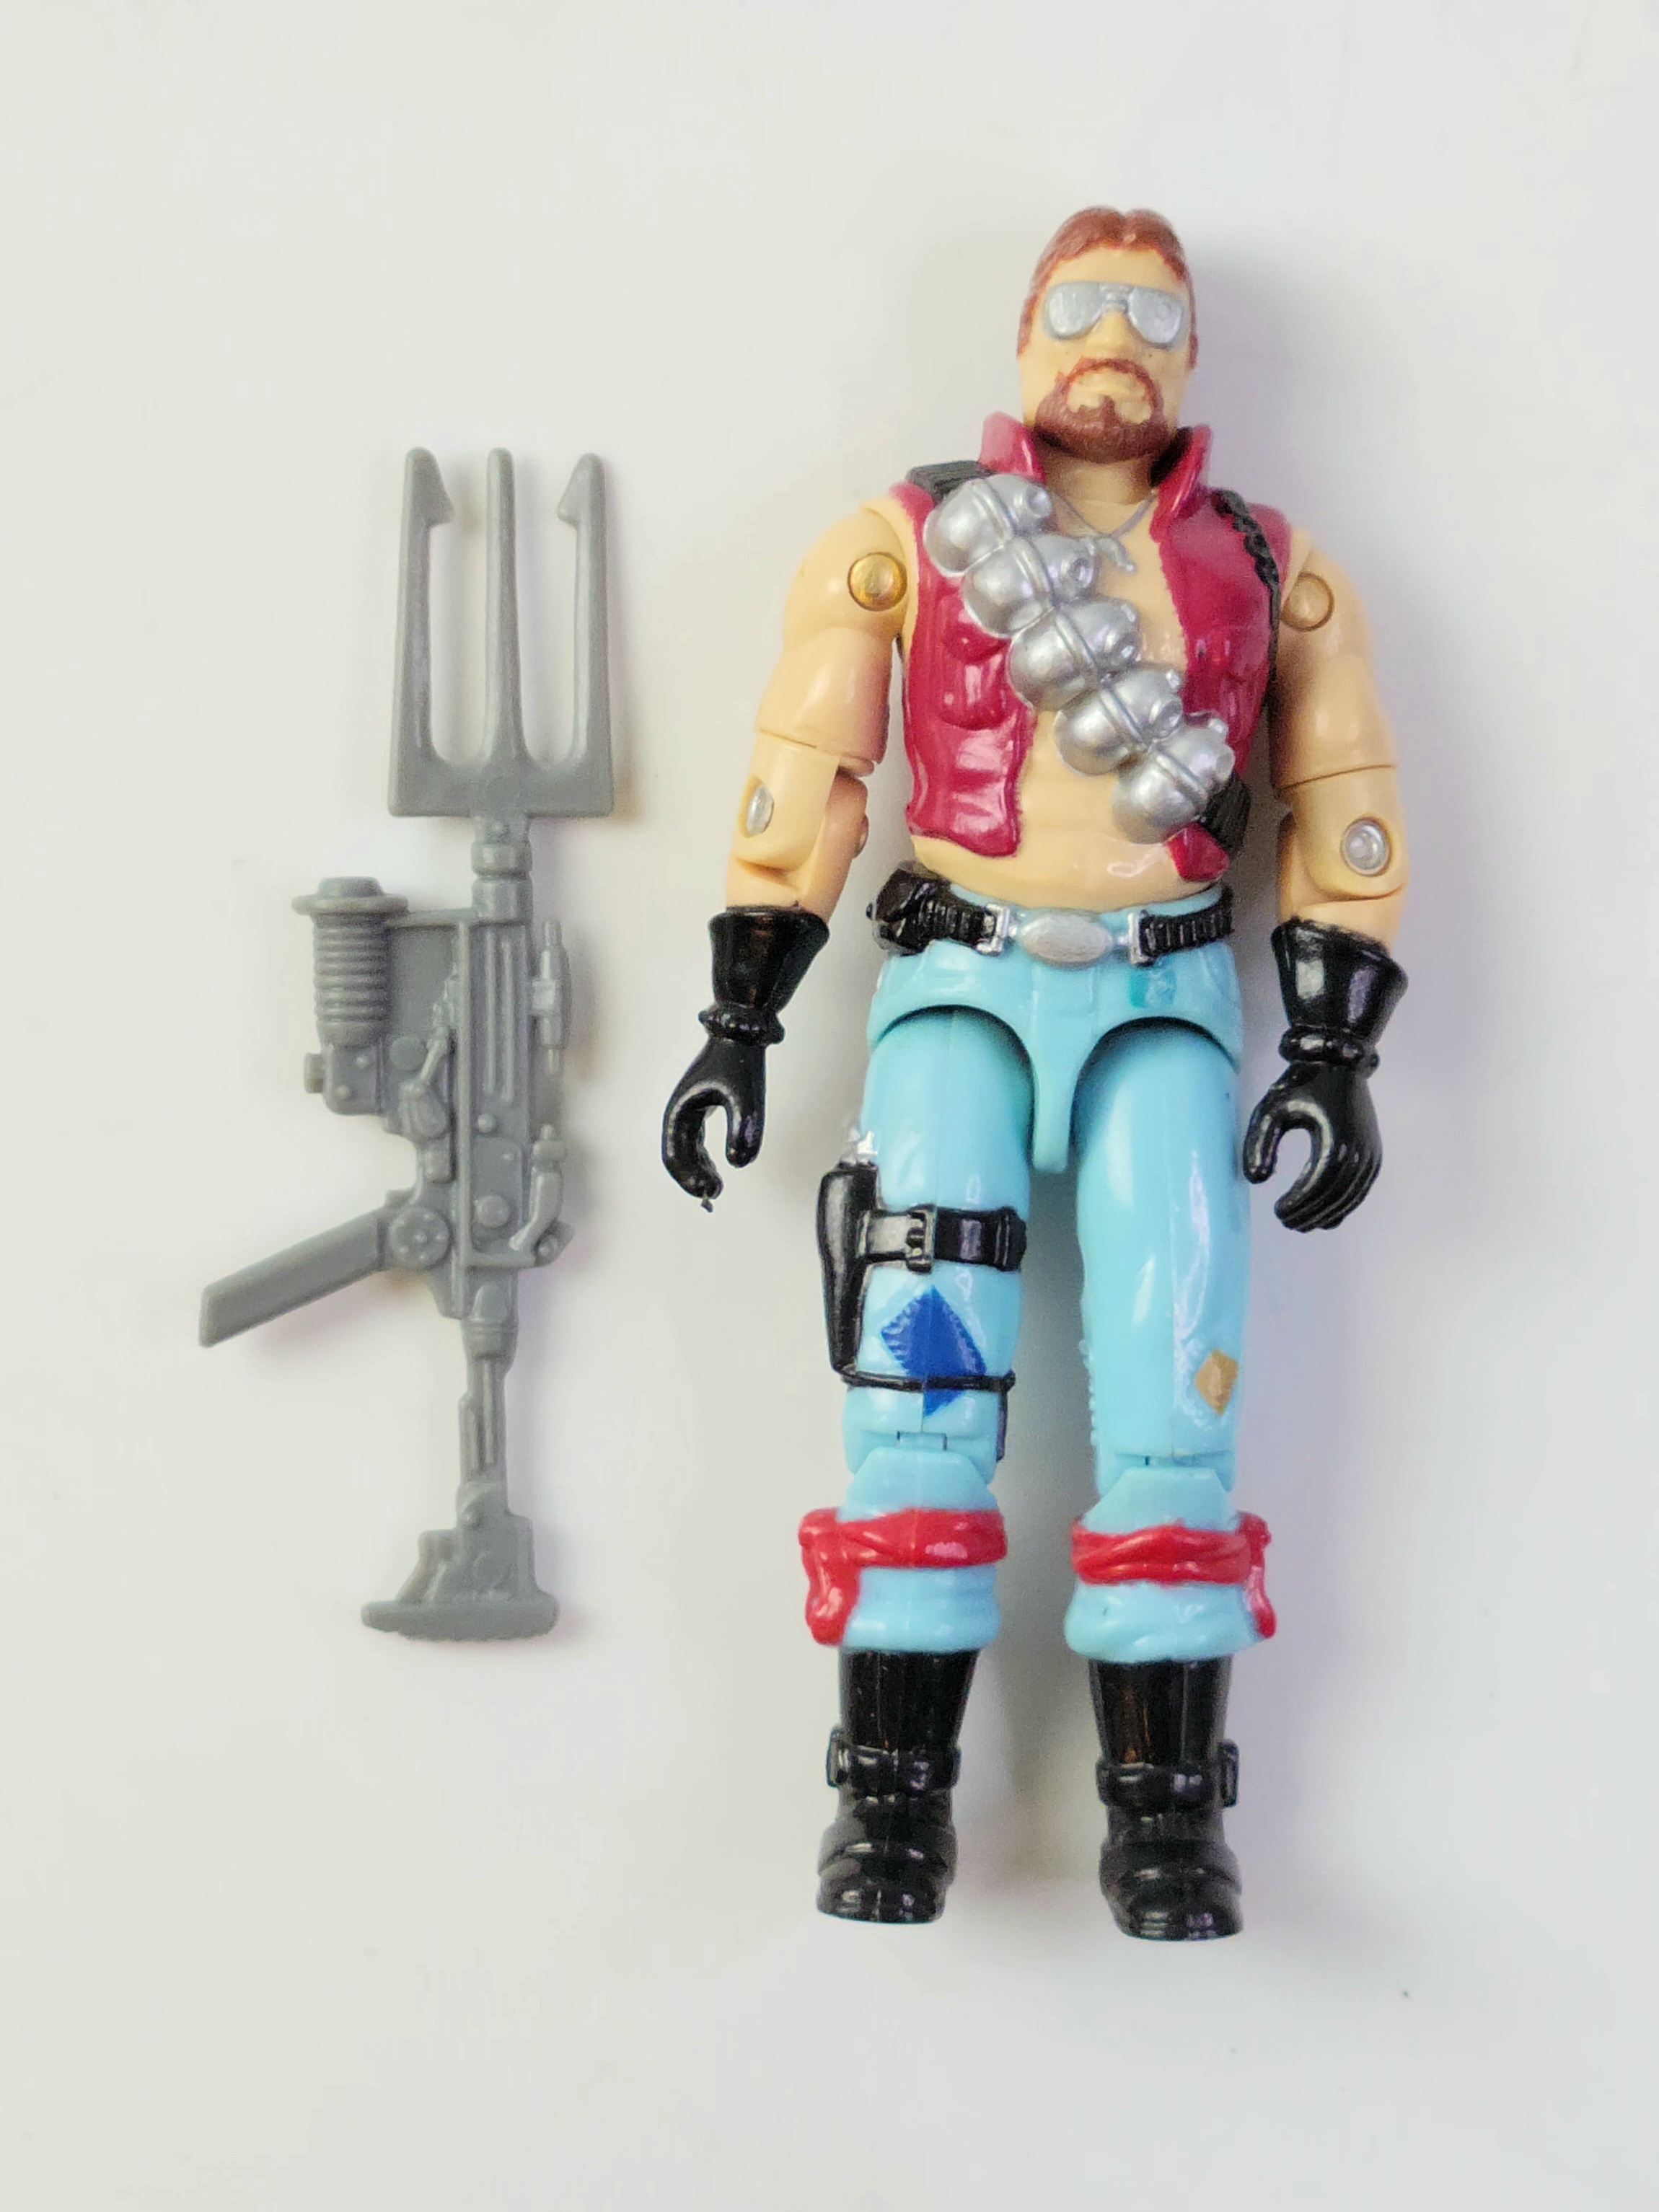 GI Joe MonkeyWrench 1986 Action Figure Toy